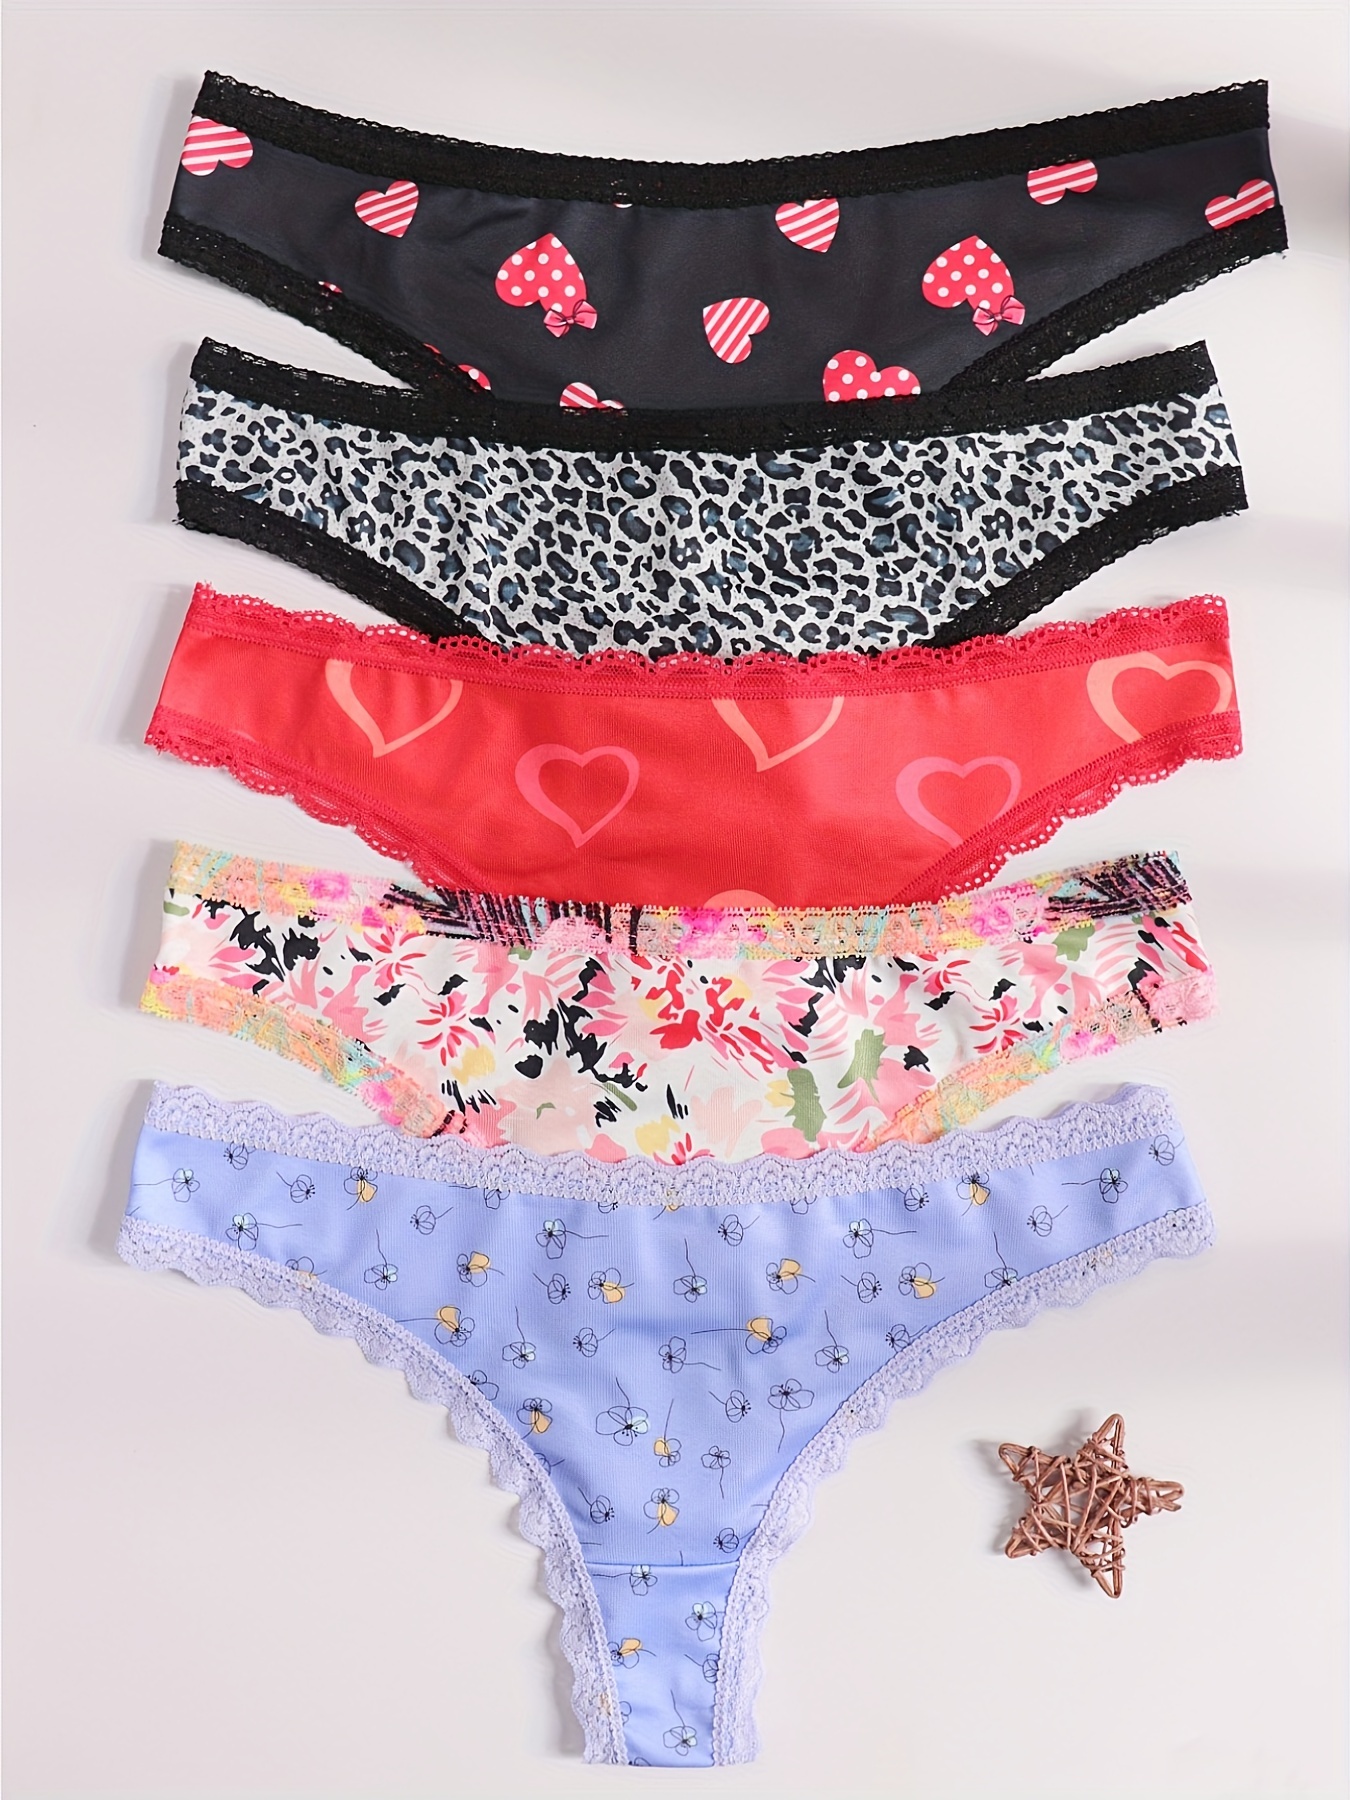 12 Womens Lace Thong Plain Flower Floral Cotton Panty Underwear